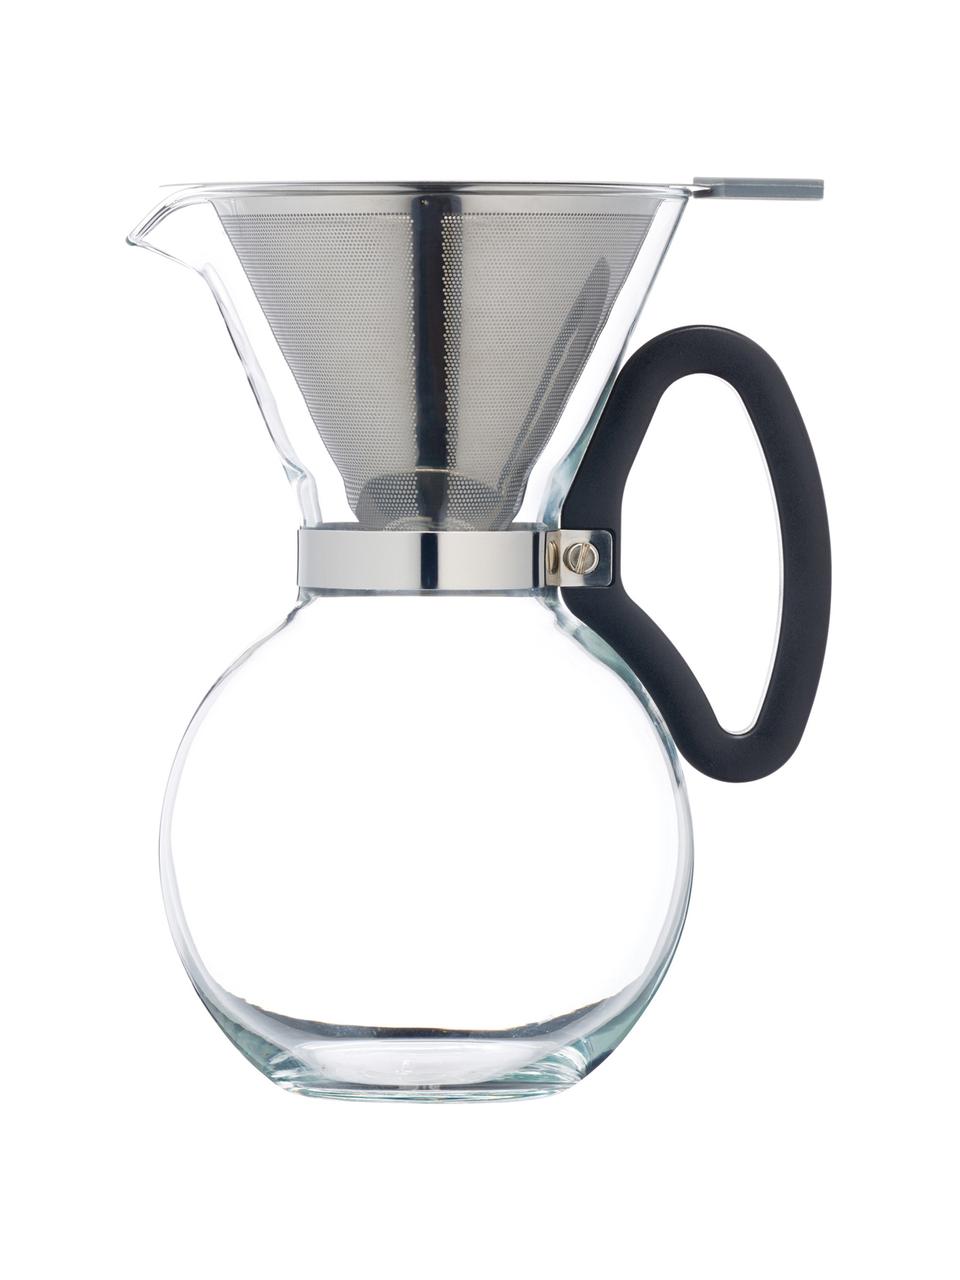 Kaffeebereiter Daisy aus Glas mit abnehmbaren Filteraufsatz, Kanne: Borosilikatglas, Griff: Kunststoff (ABS), Filter und Befestigung: Edelstahl, Transparent, Edelstahl, 1 L